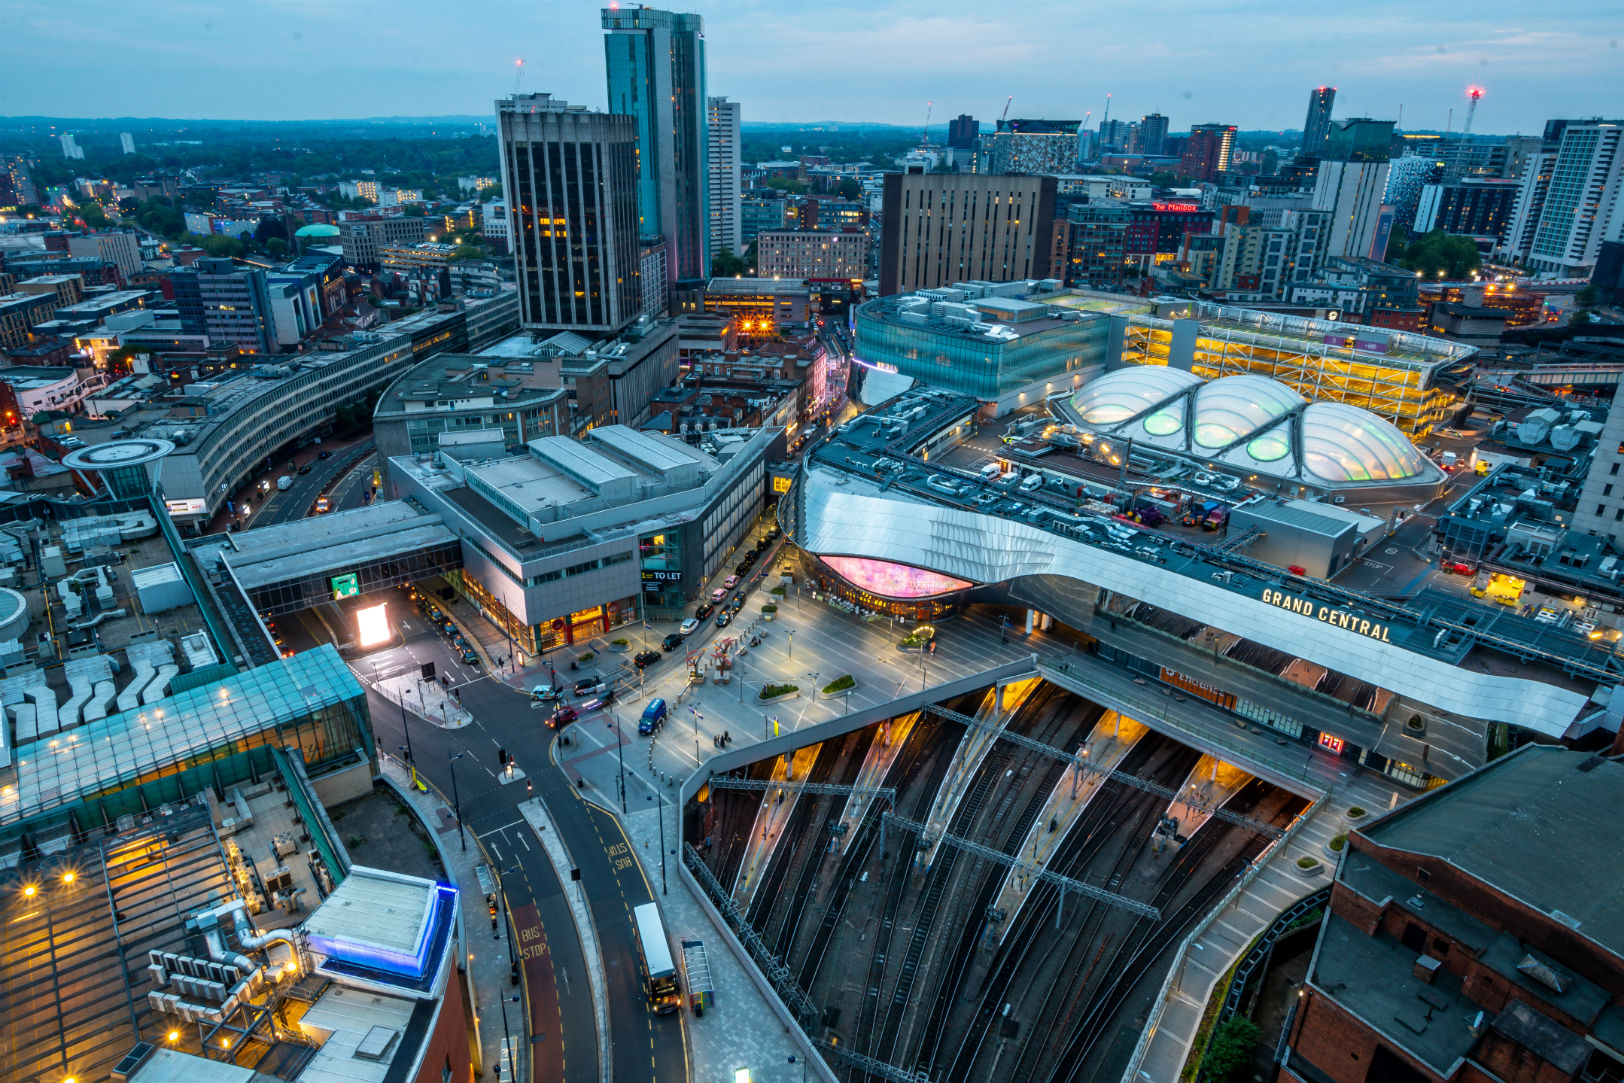 Birmingham's Clean Air Zone launches summer 2020